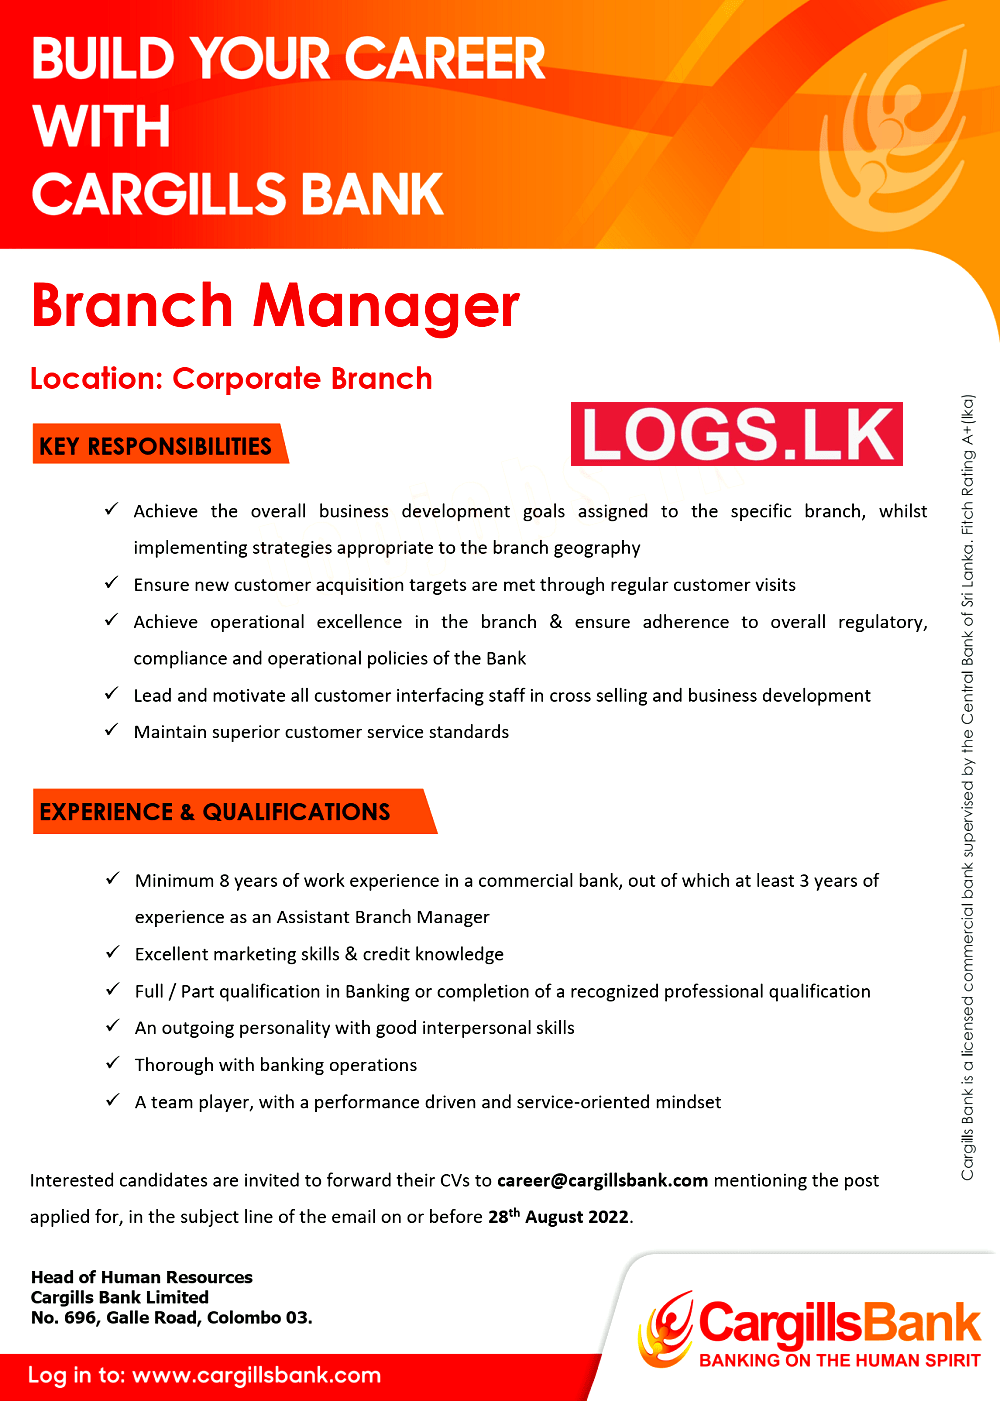 Branch Manager (Corporate Branch) - Cargills Bank Jobs Vacancies